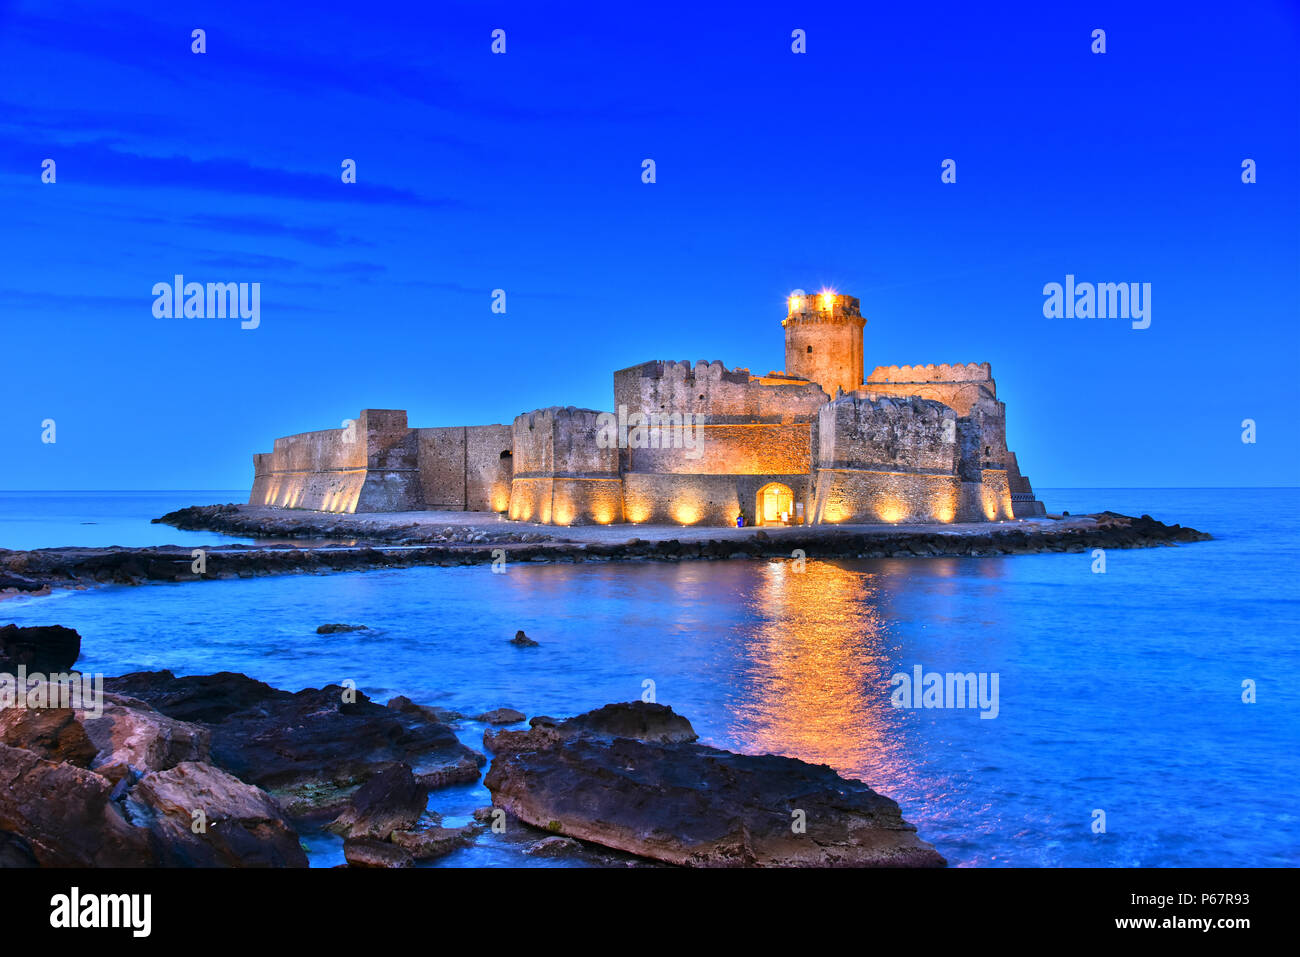 Il castello di Isola di Capo Rizzuto in provincia di Crotone, Calabria, Italia. Foto Stock